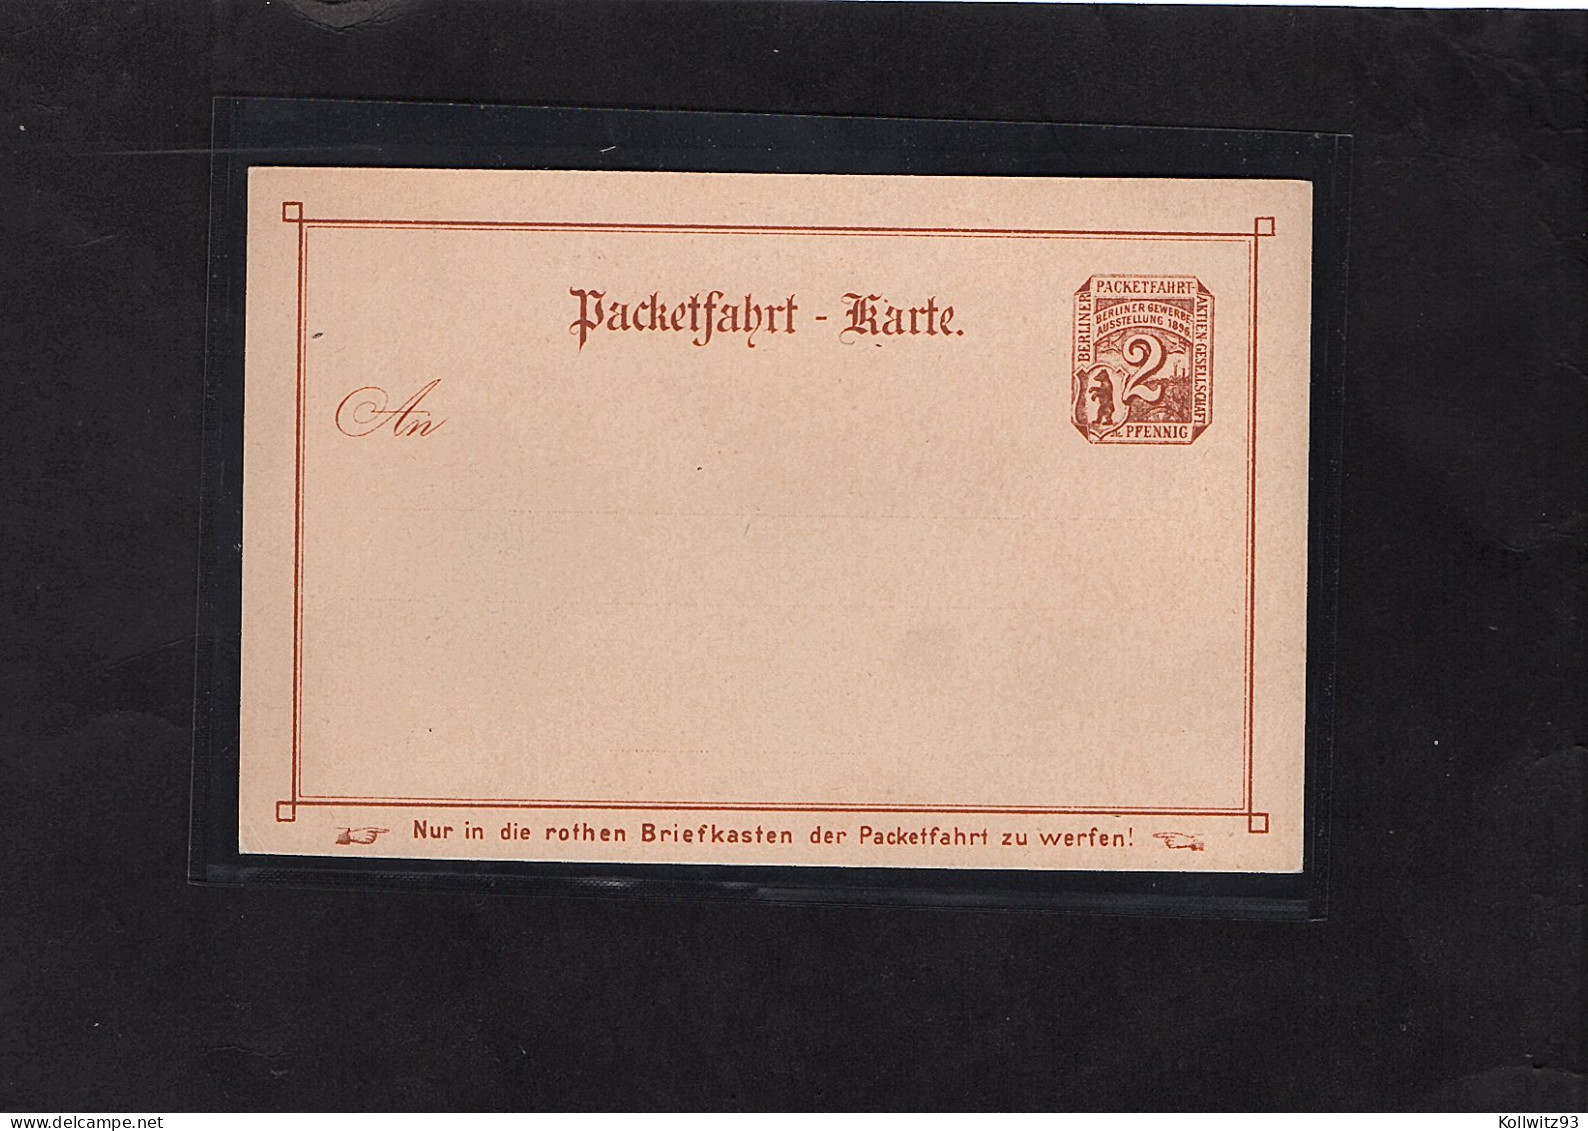 Privatpost, GS. 2 Pfg. Braun, Berliner Gewerbe Ausstellung 1896 Ungebraucht - Posta Privata & Locale